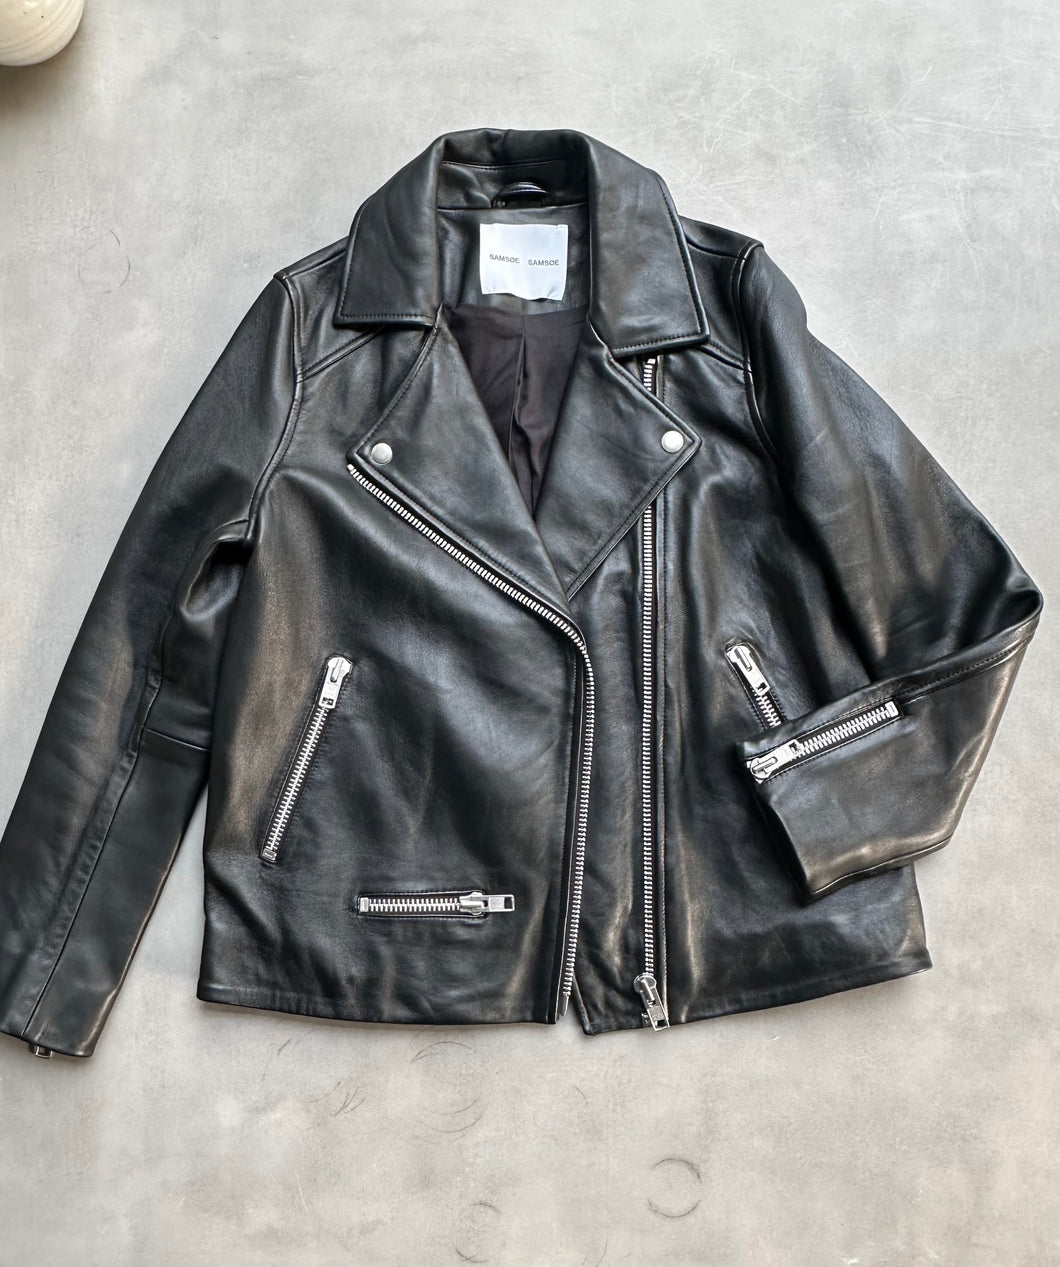 Recycle SAMSOESAMSOE leather jacket